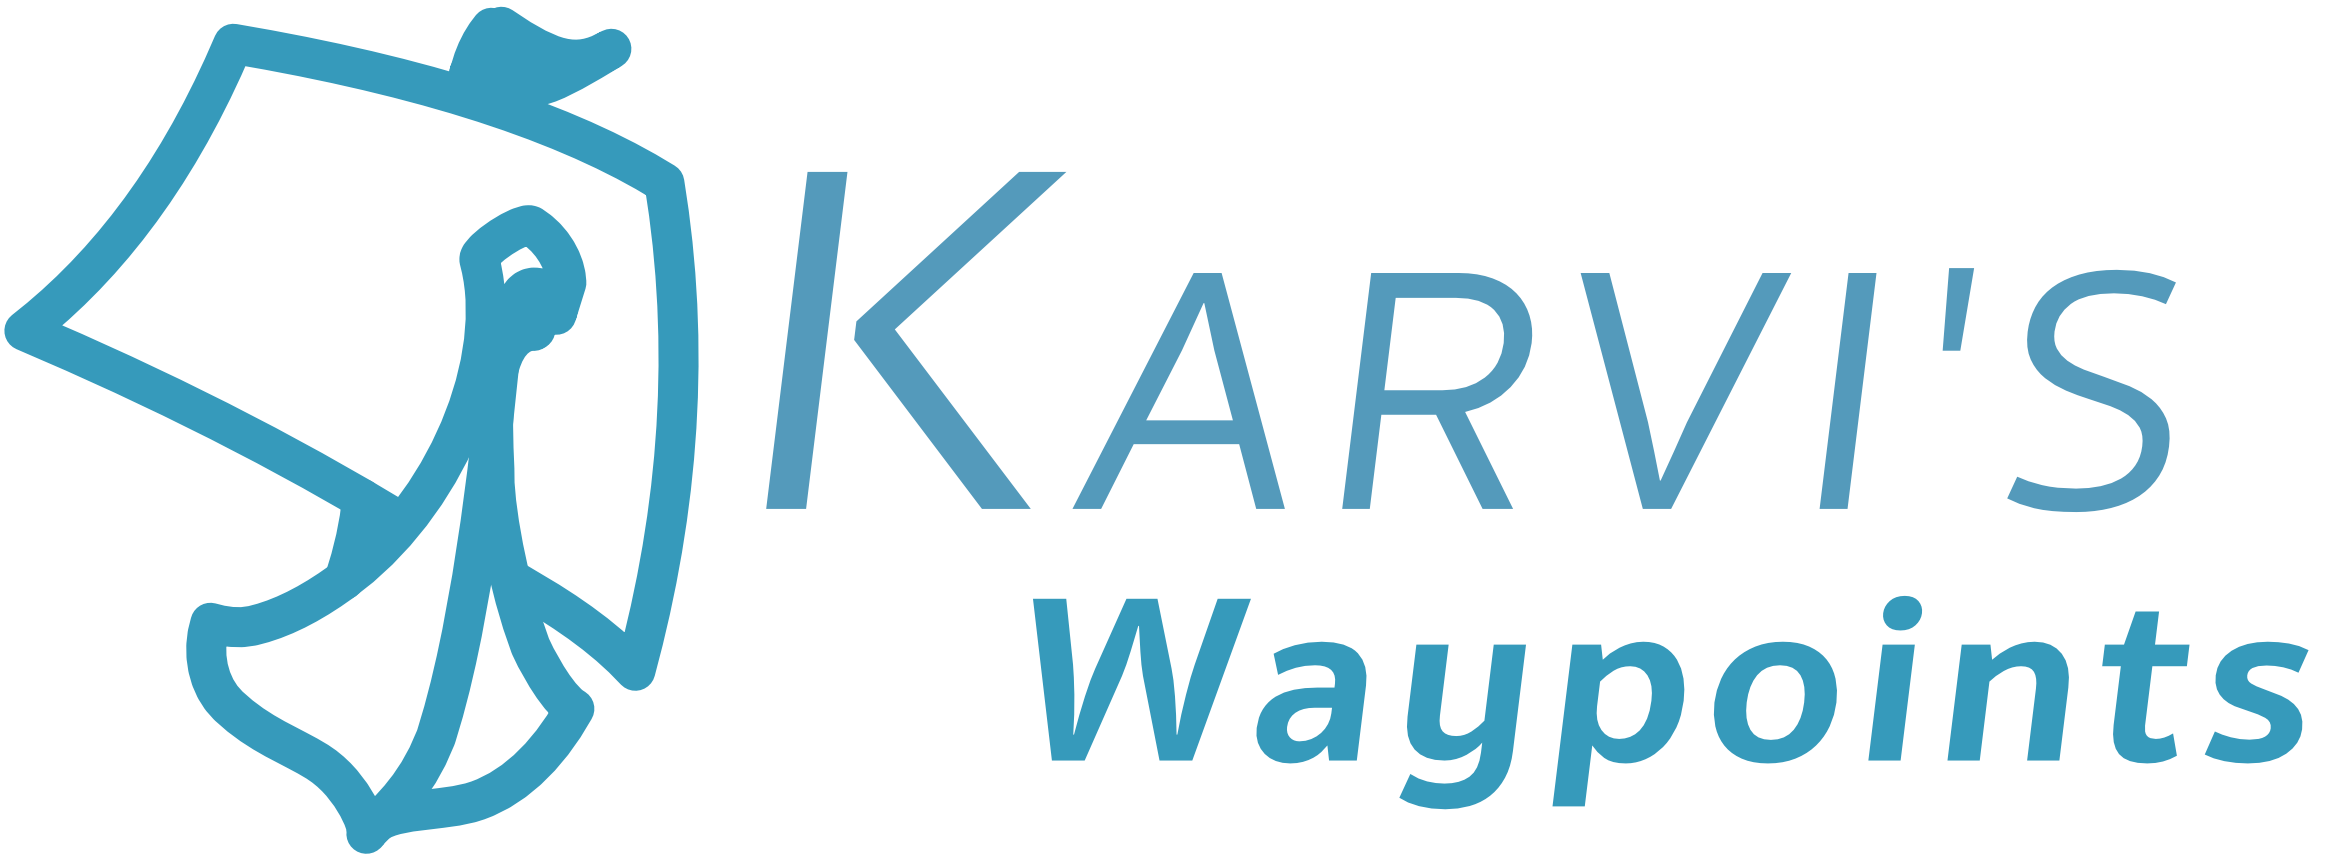 Karvi's Waypoints